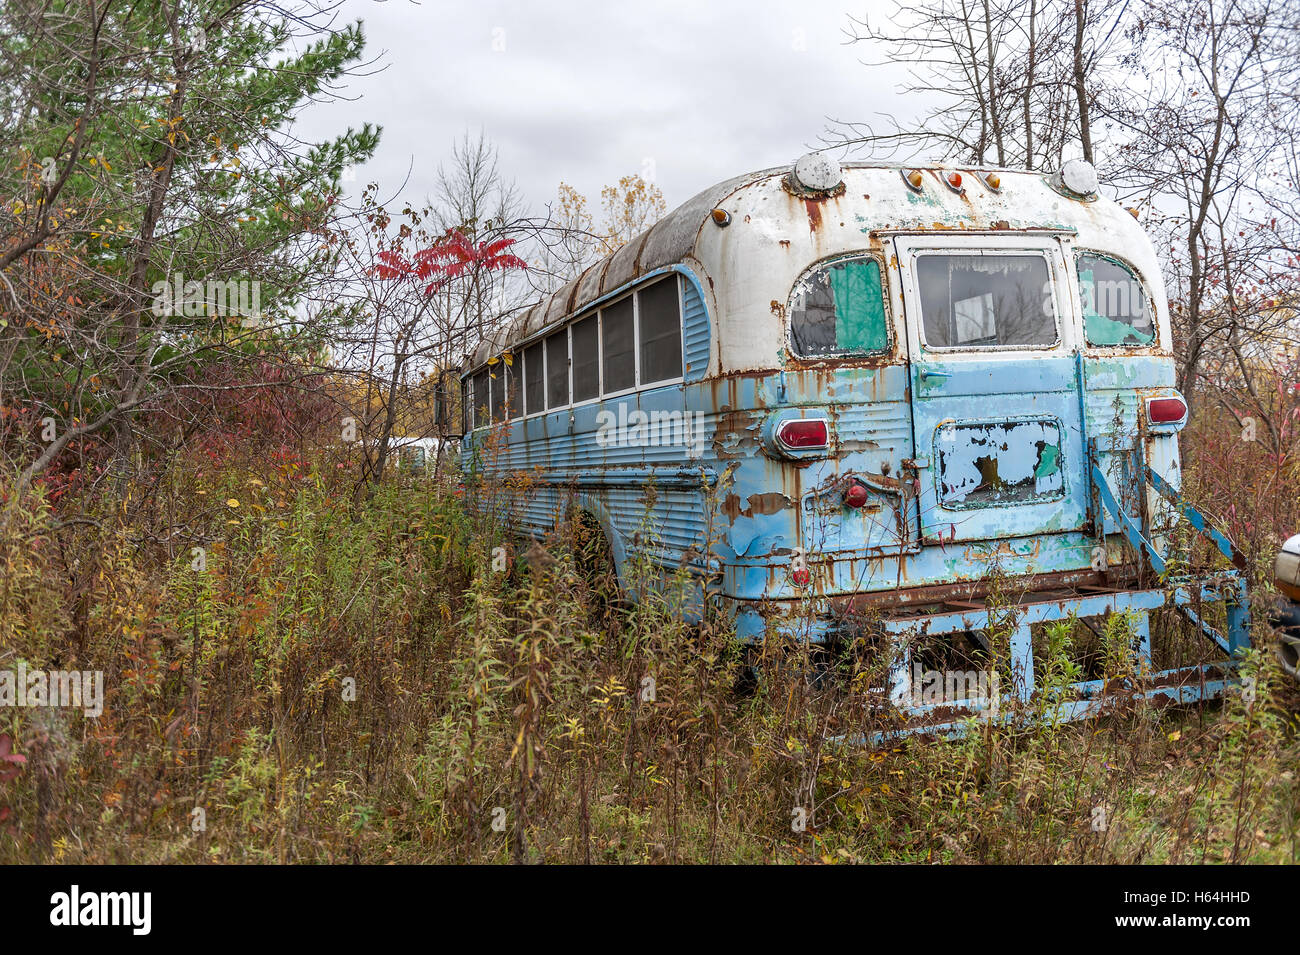 Abandoned GMC bus Stock Photo